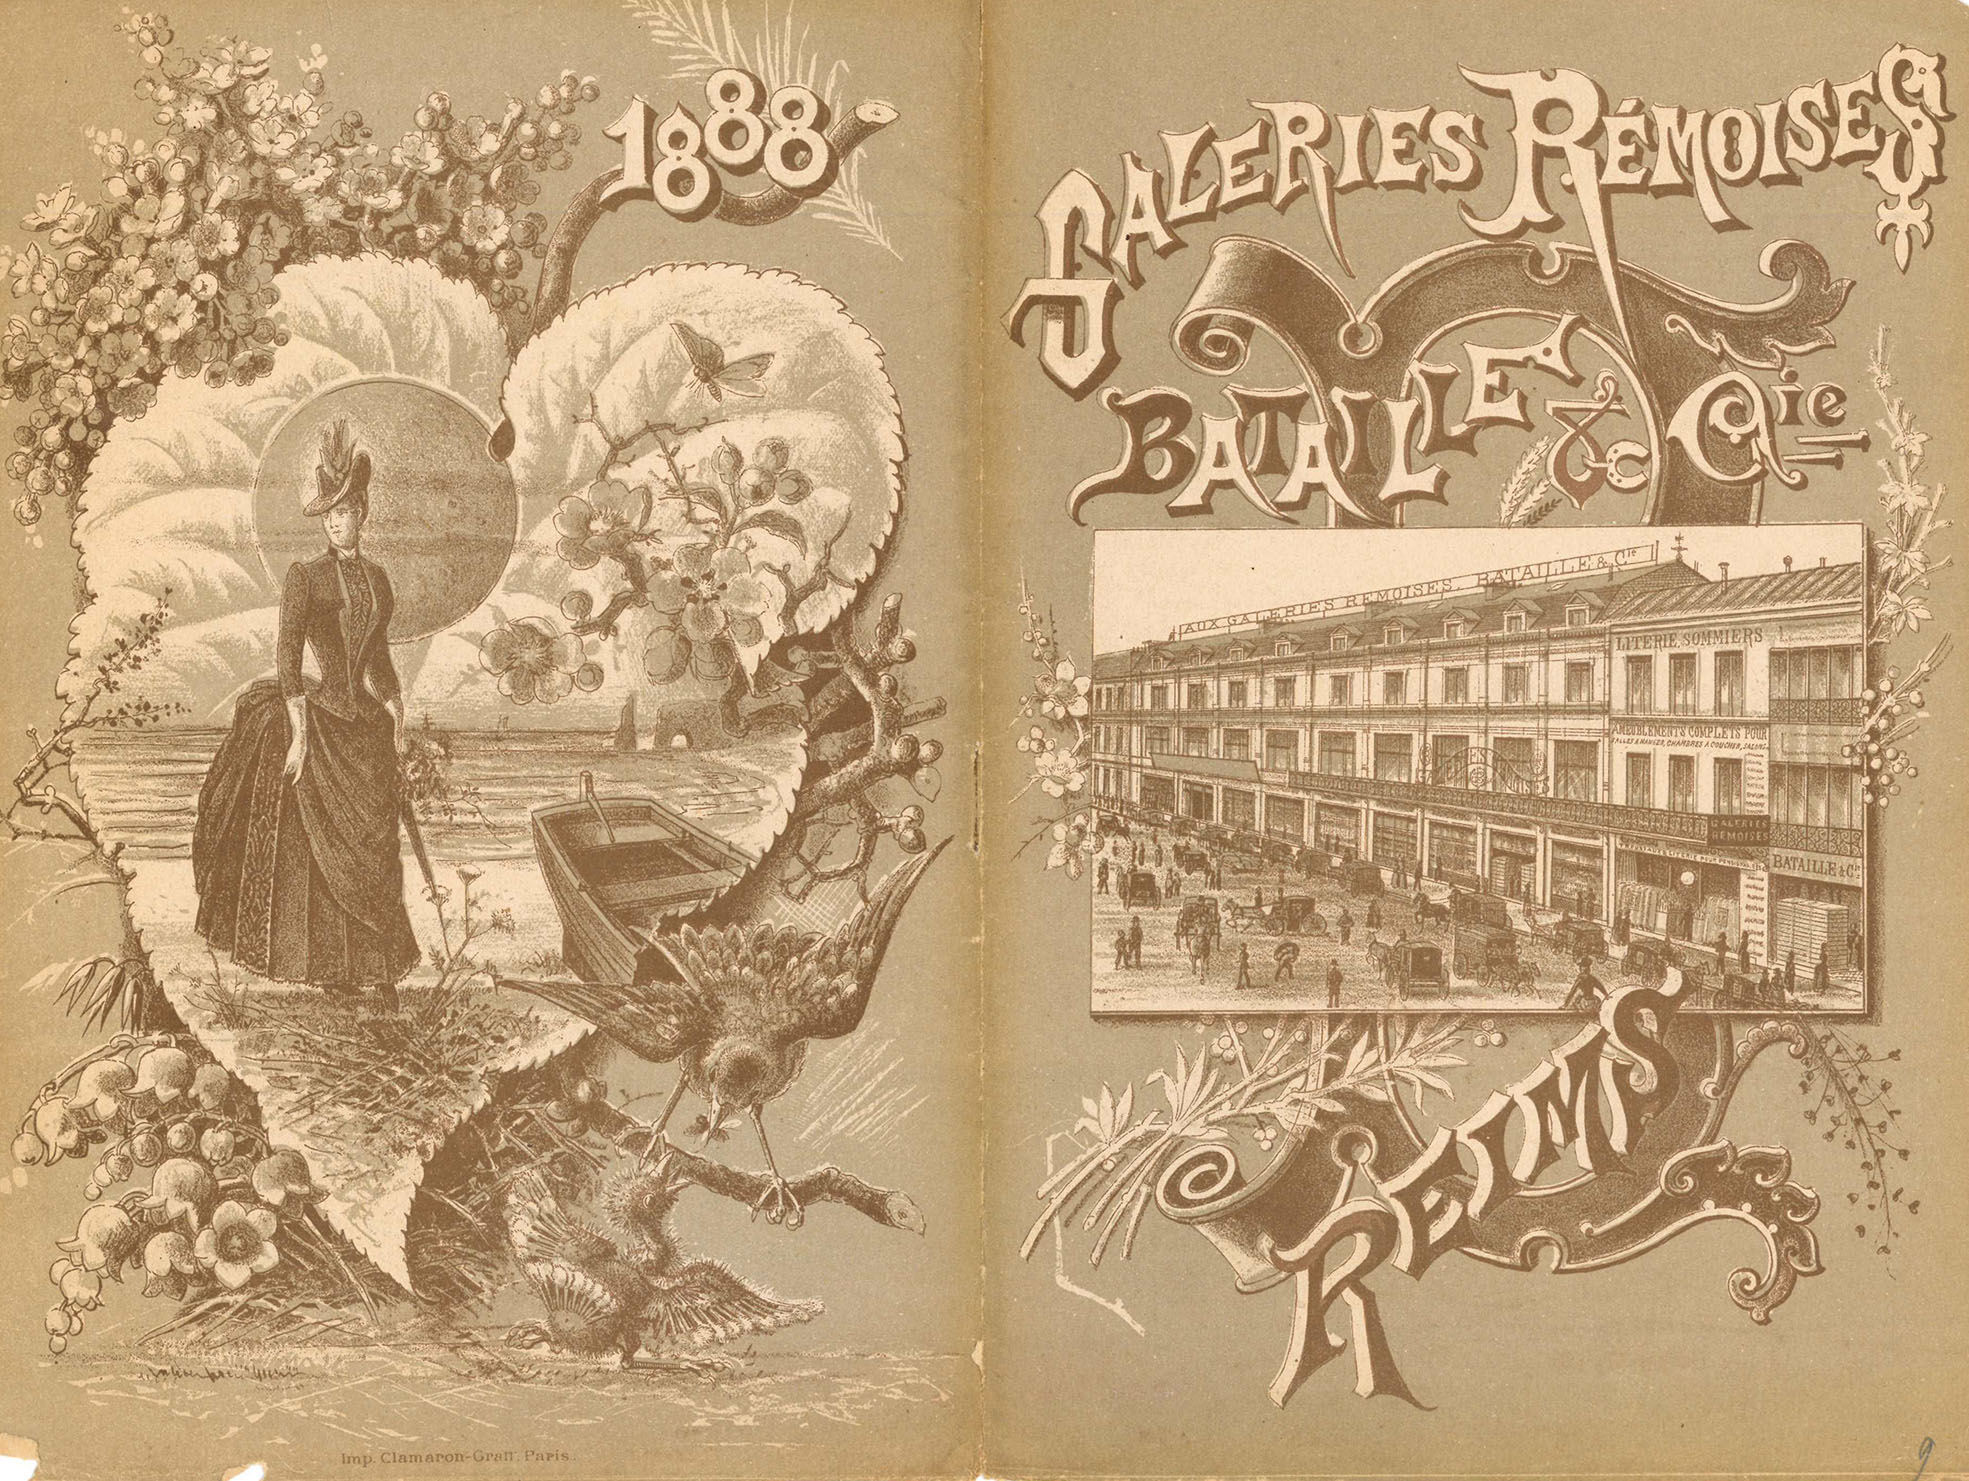 Couverture d'un catalogue des Galeries Rémoises, année 1888. Reims, Bibliothèque municipale, Boite Menu 52.